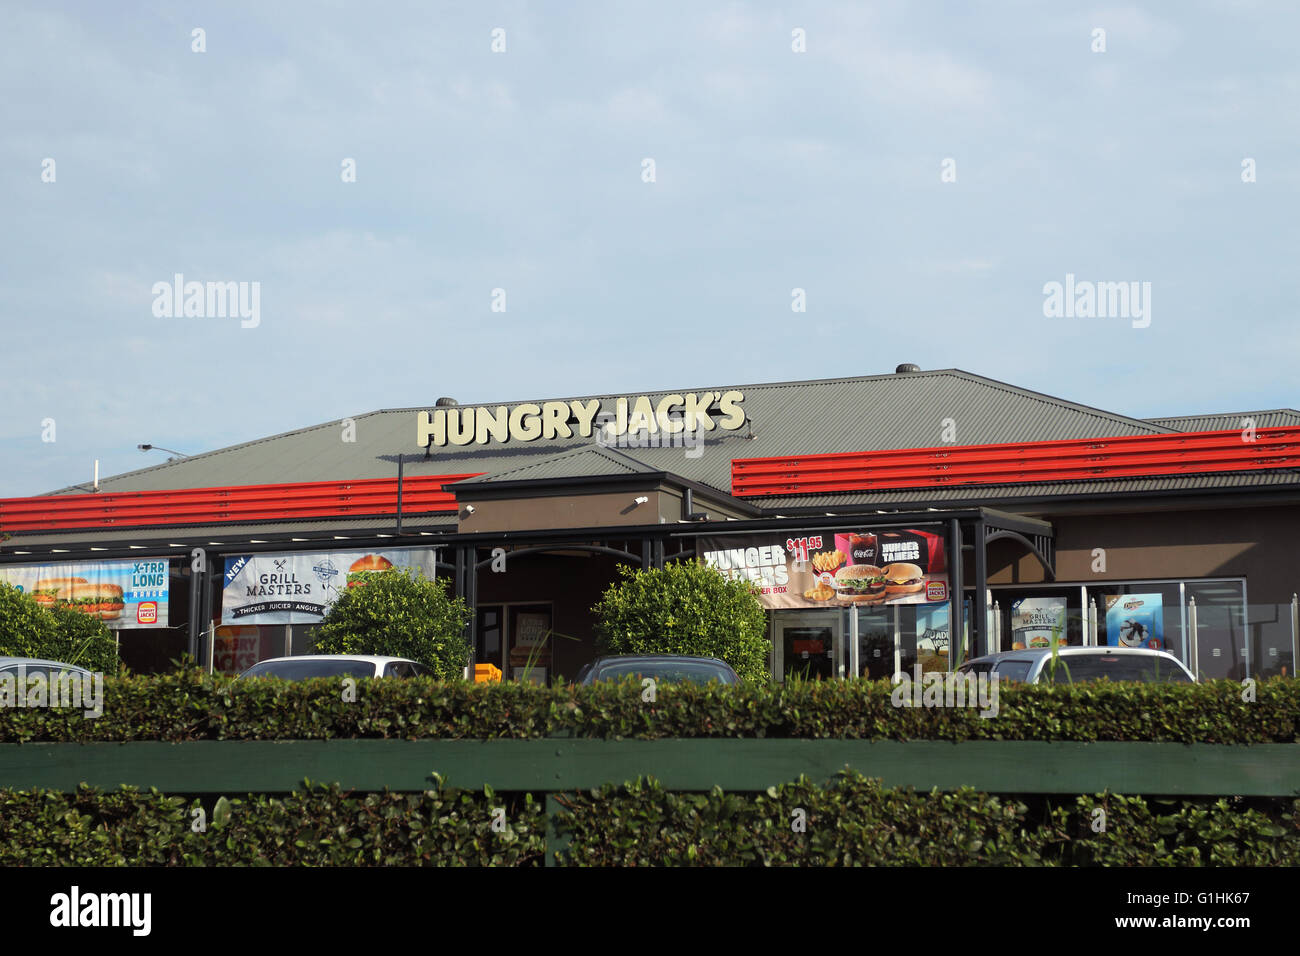 Hungrigen Jacks Burger King Australian schnell Nahrungskette essen Fastfood-restaurant Stockfoto